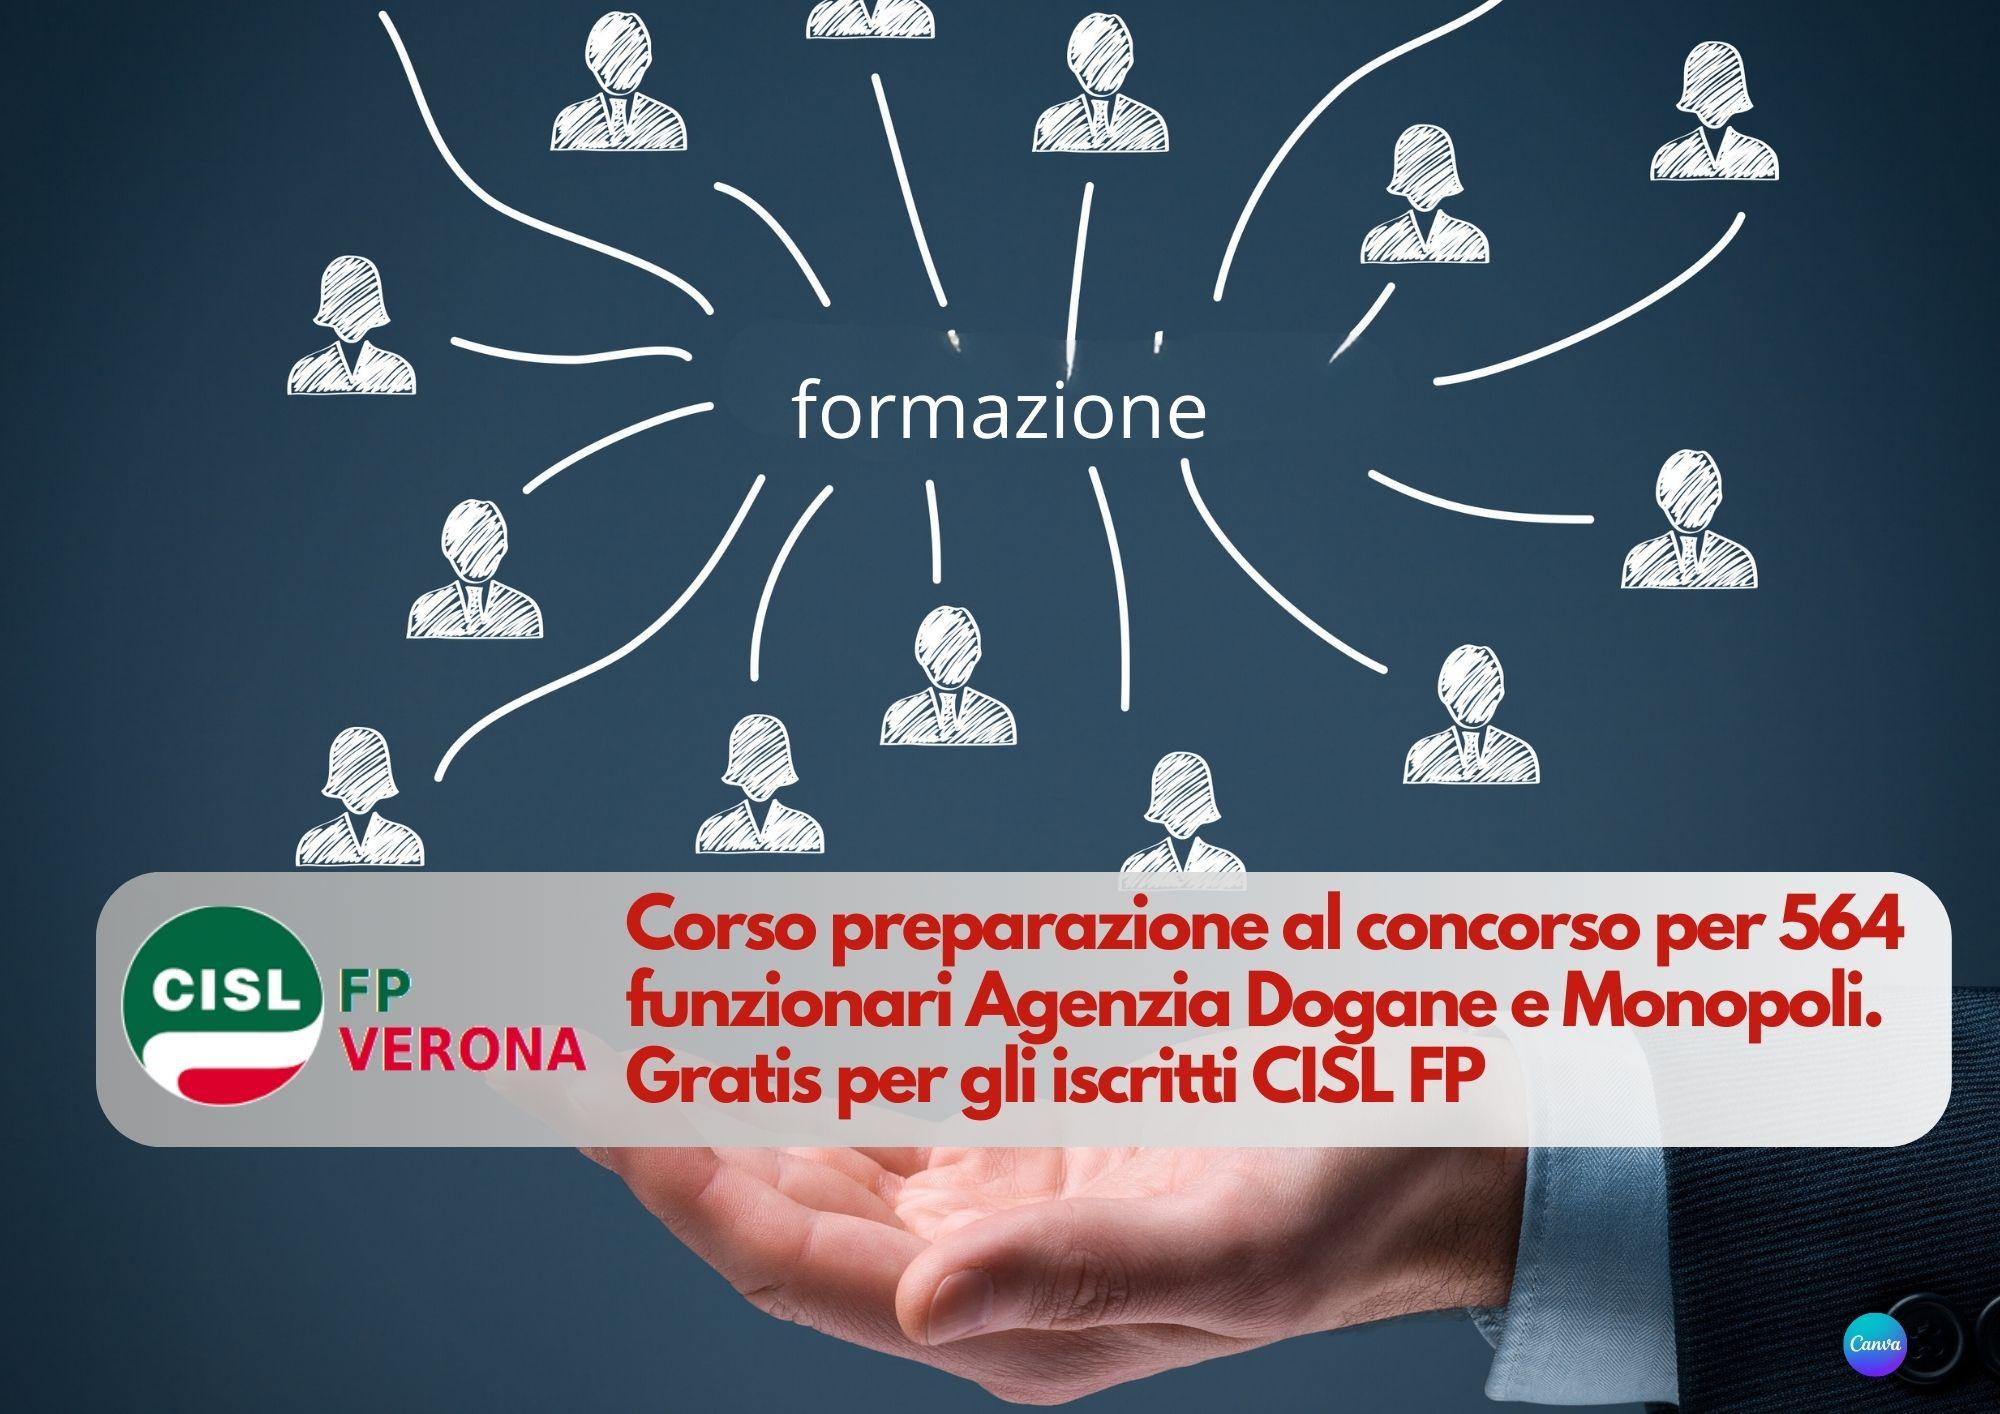 CISL FP Verona. Concorso 564 funzionari Agenzia Dogane e Monopoli: corso di preparazione